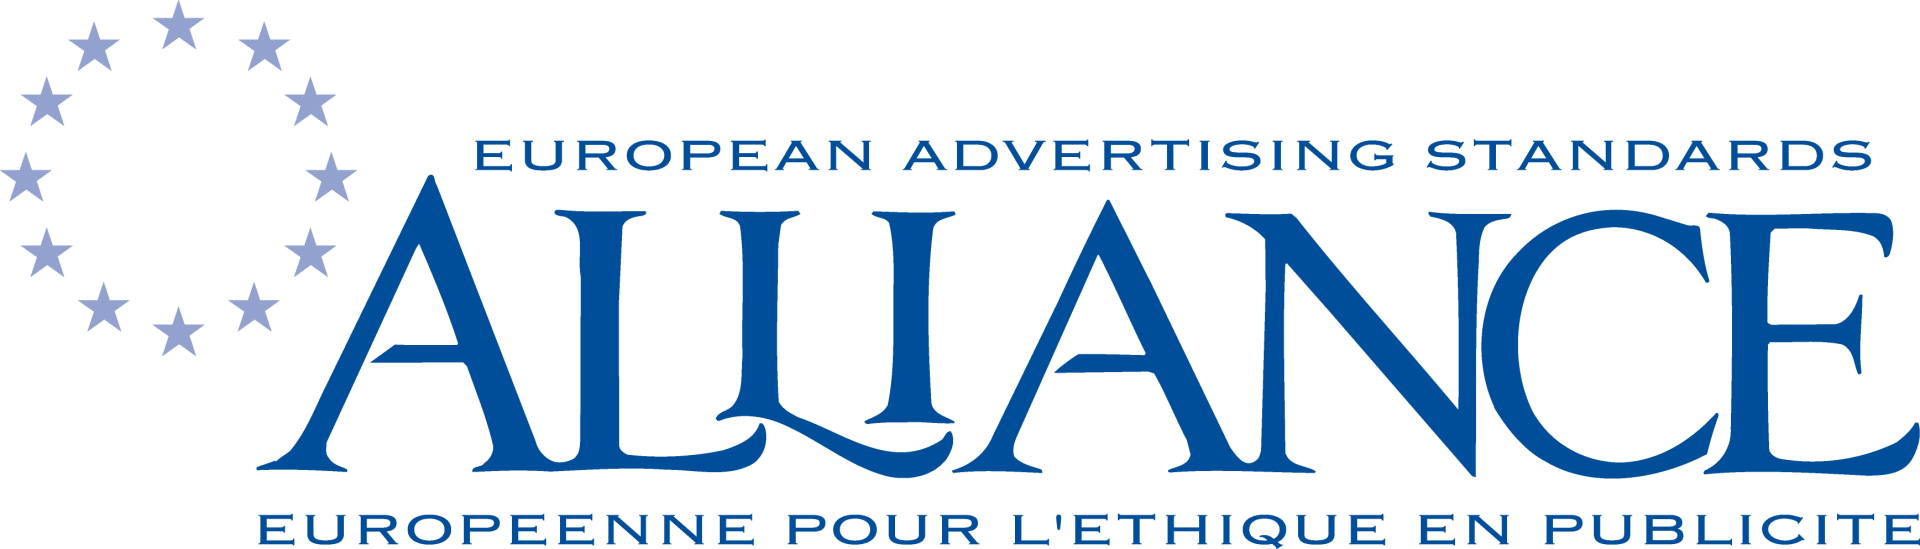 EASA Logo - EASA logo